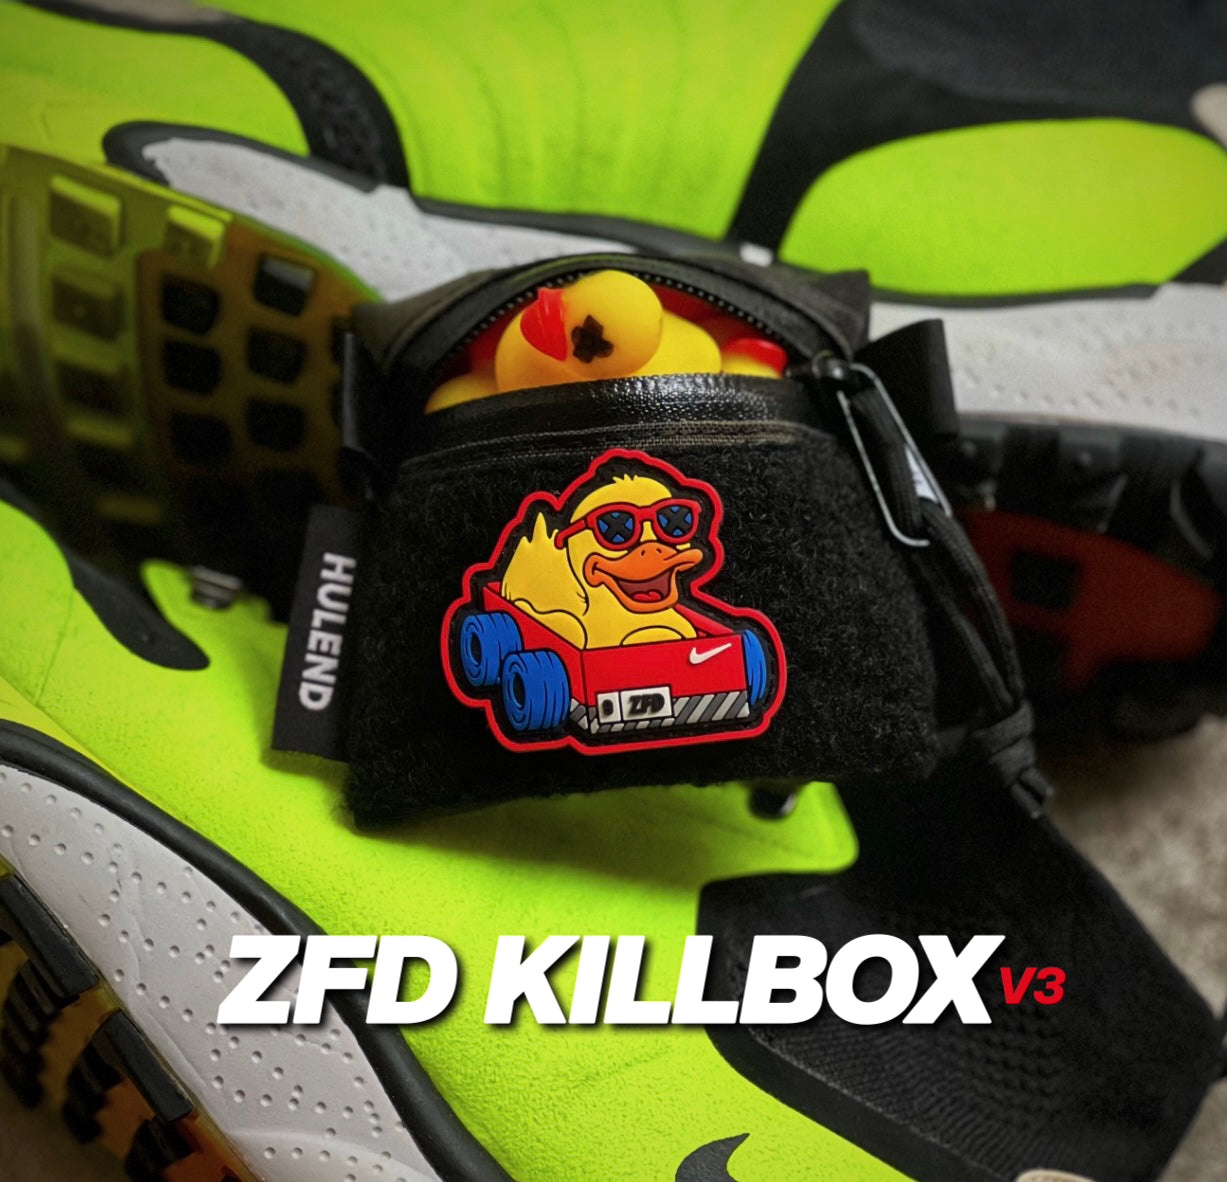 Zero Fucks Duck®️ KillBOX Mini Patch Series - V3